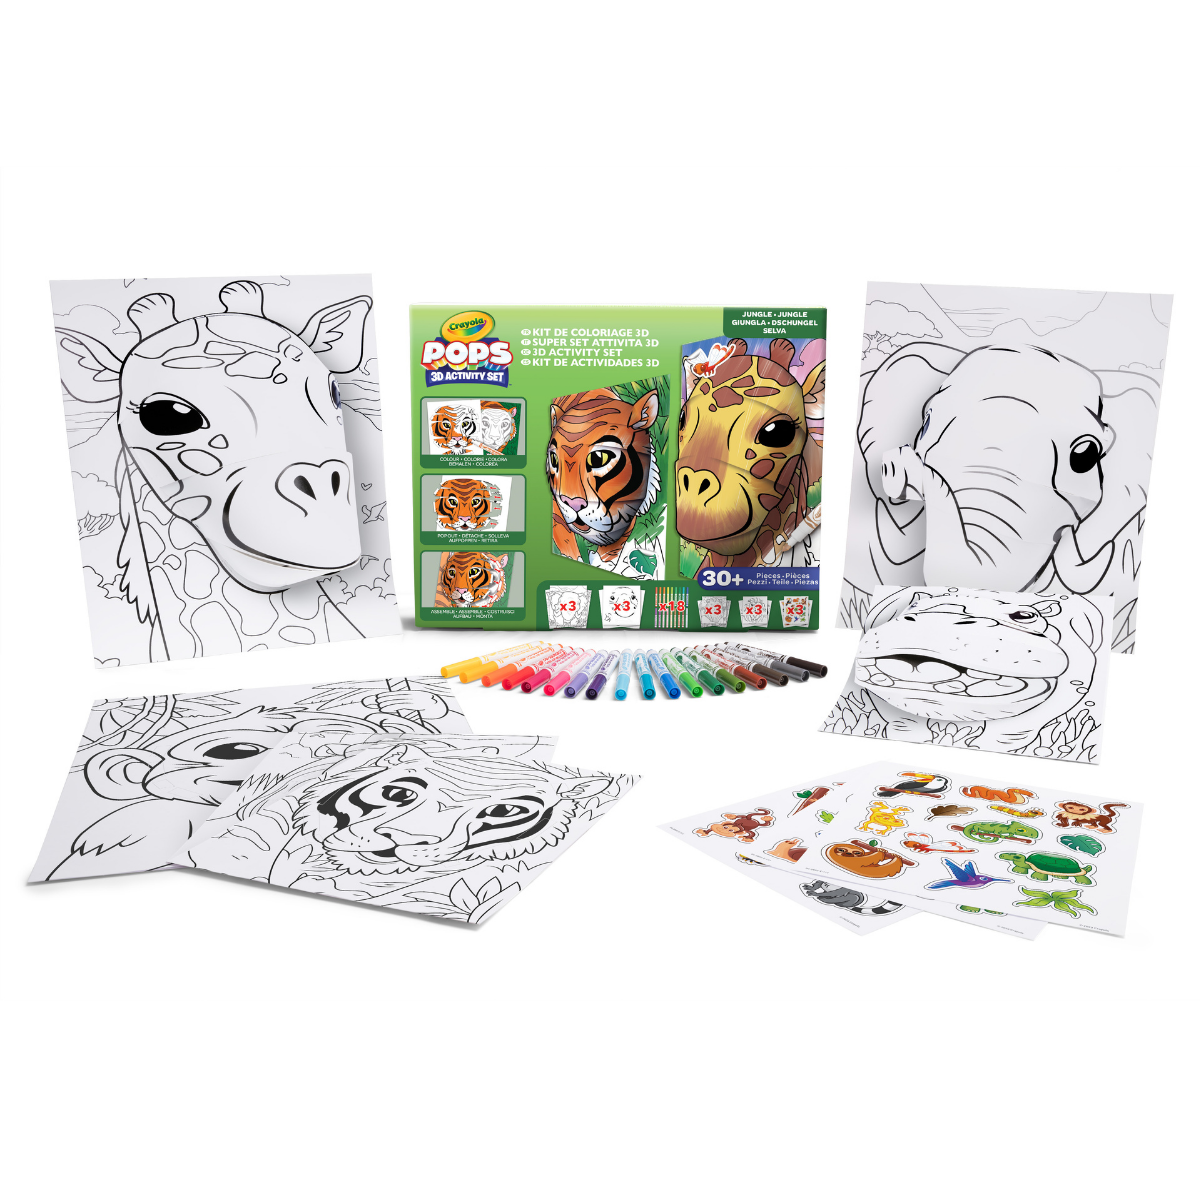 Crayola pops 3d activity set animali della giungla – colora e crea disegni tridimensionali - CRAYOLA